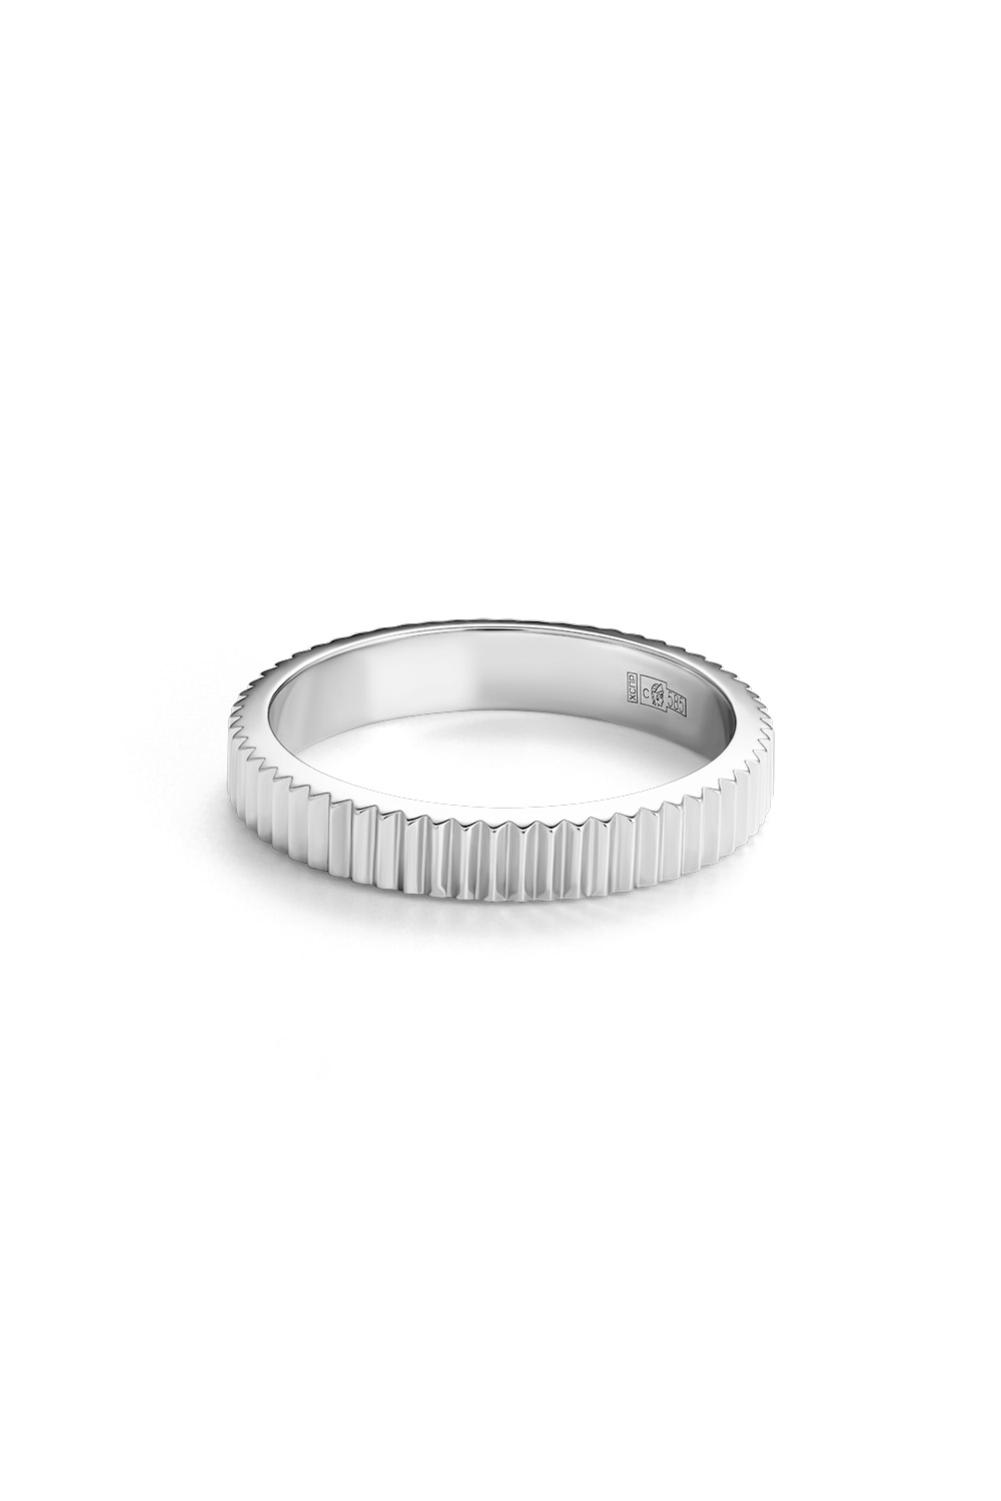 Обручальное кольцо, белое золото, Avgvst, 30 750 руб.